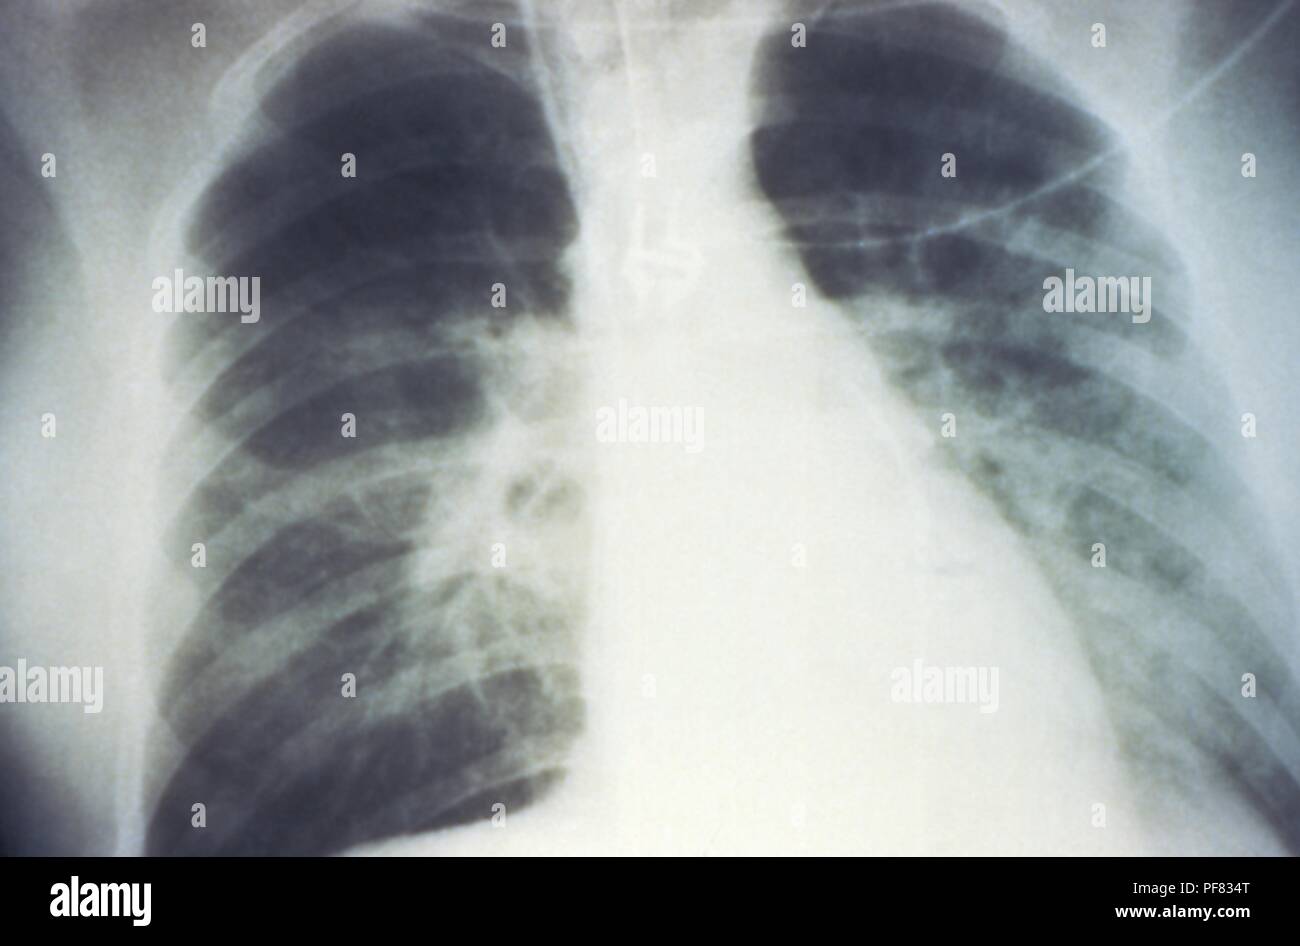 Mediados de-escenificado derrame pulmonar bilateral debido a síndrome pulmonar por hantavirus (SPH), revelado en la radiografía de tórax AP, 1994. Imagen cortesía de los Centros para el Control de Enfermedades (CDC) / D. Loren Ketai, M.D. () Foto de stock